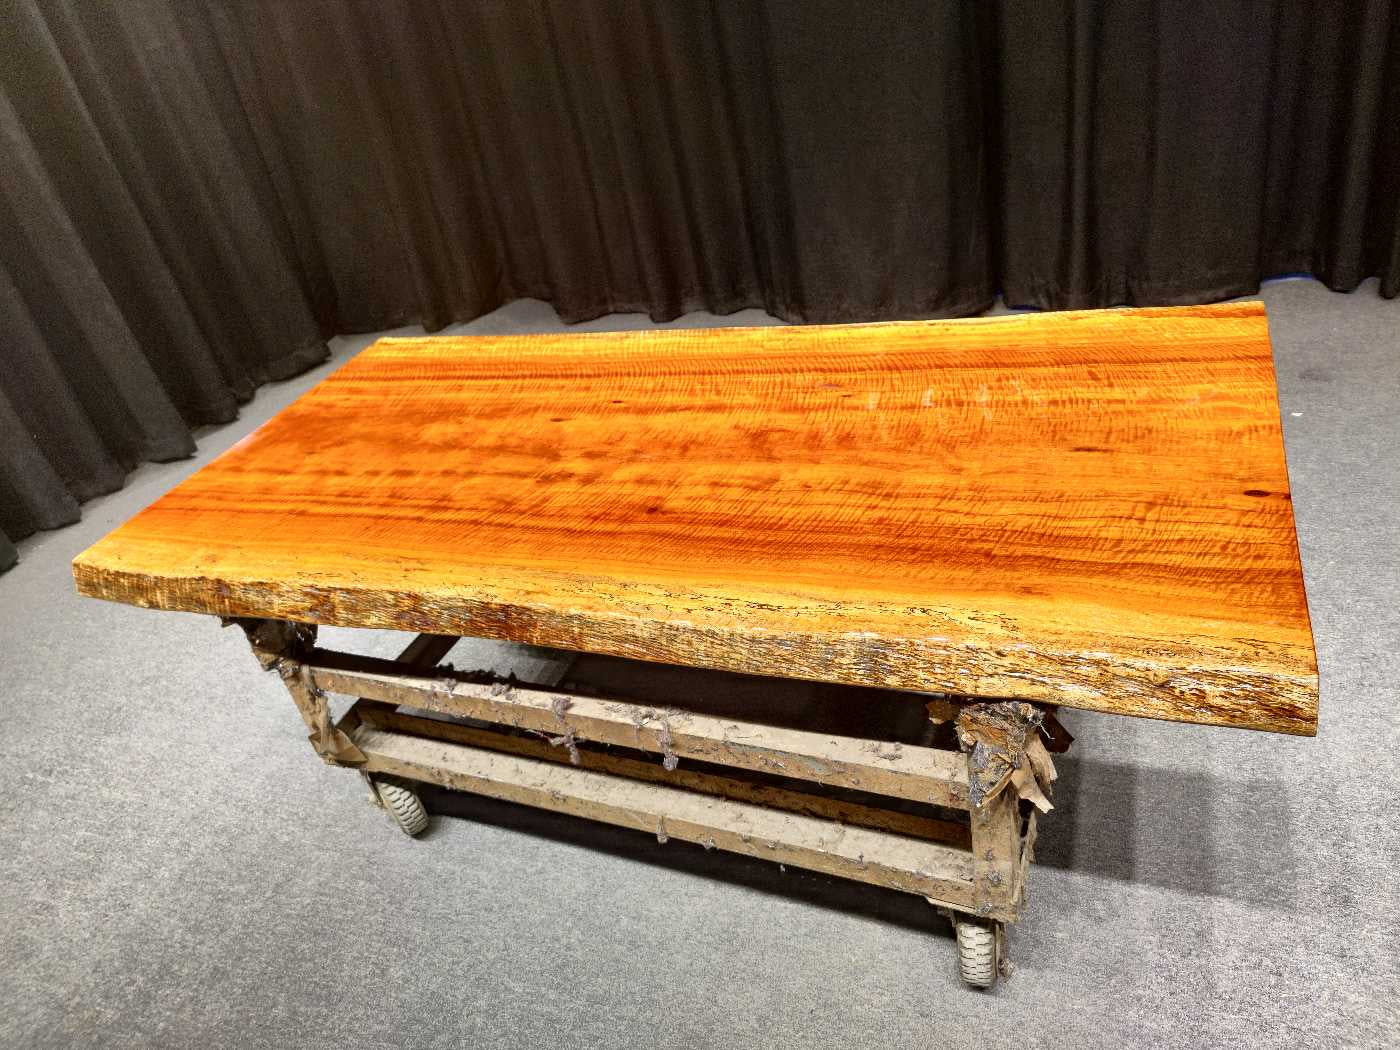 زامبيا لوح طاولة من الخشب الصلب، طاولة لوح حافة حية من خشب الكوبال الروديسي